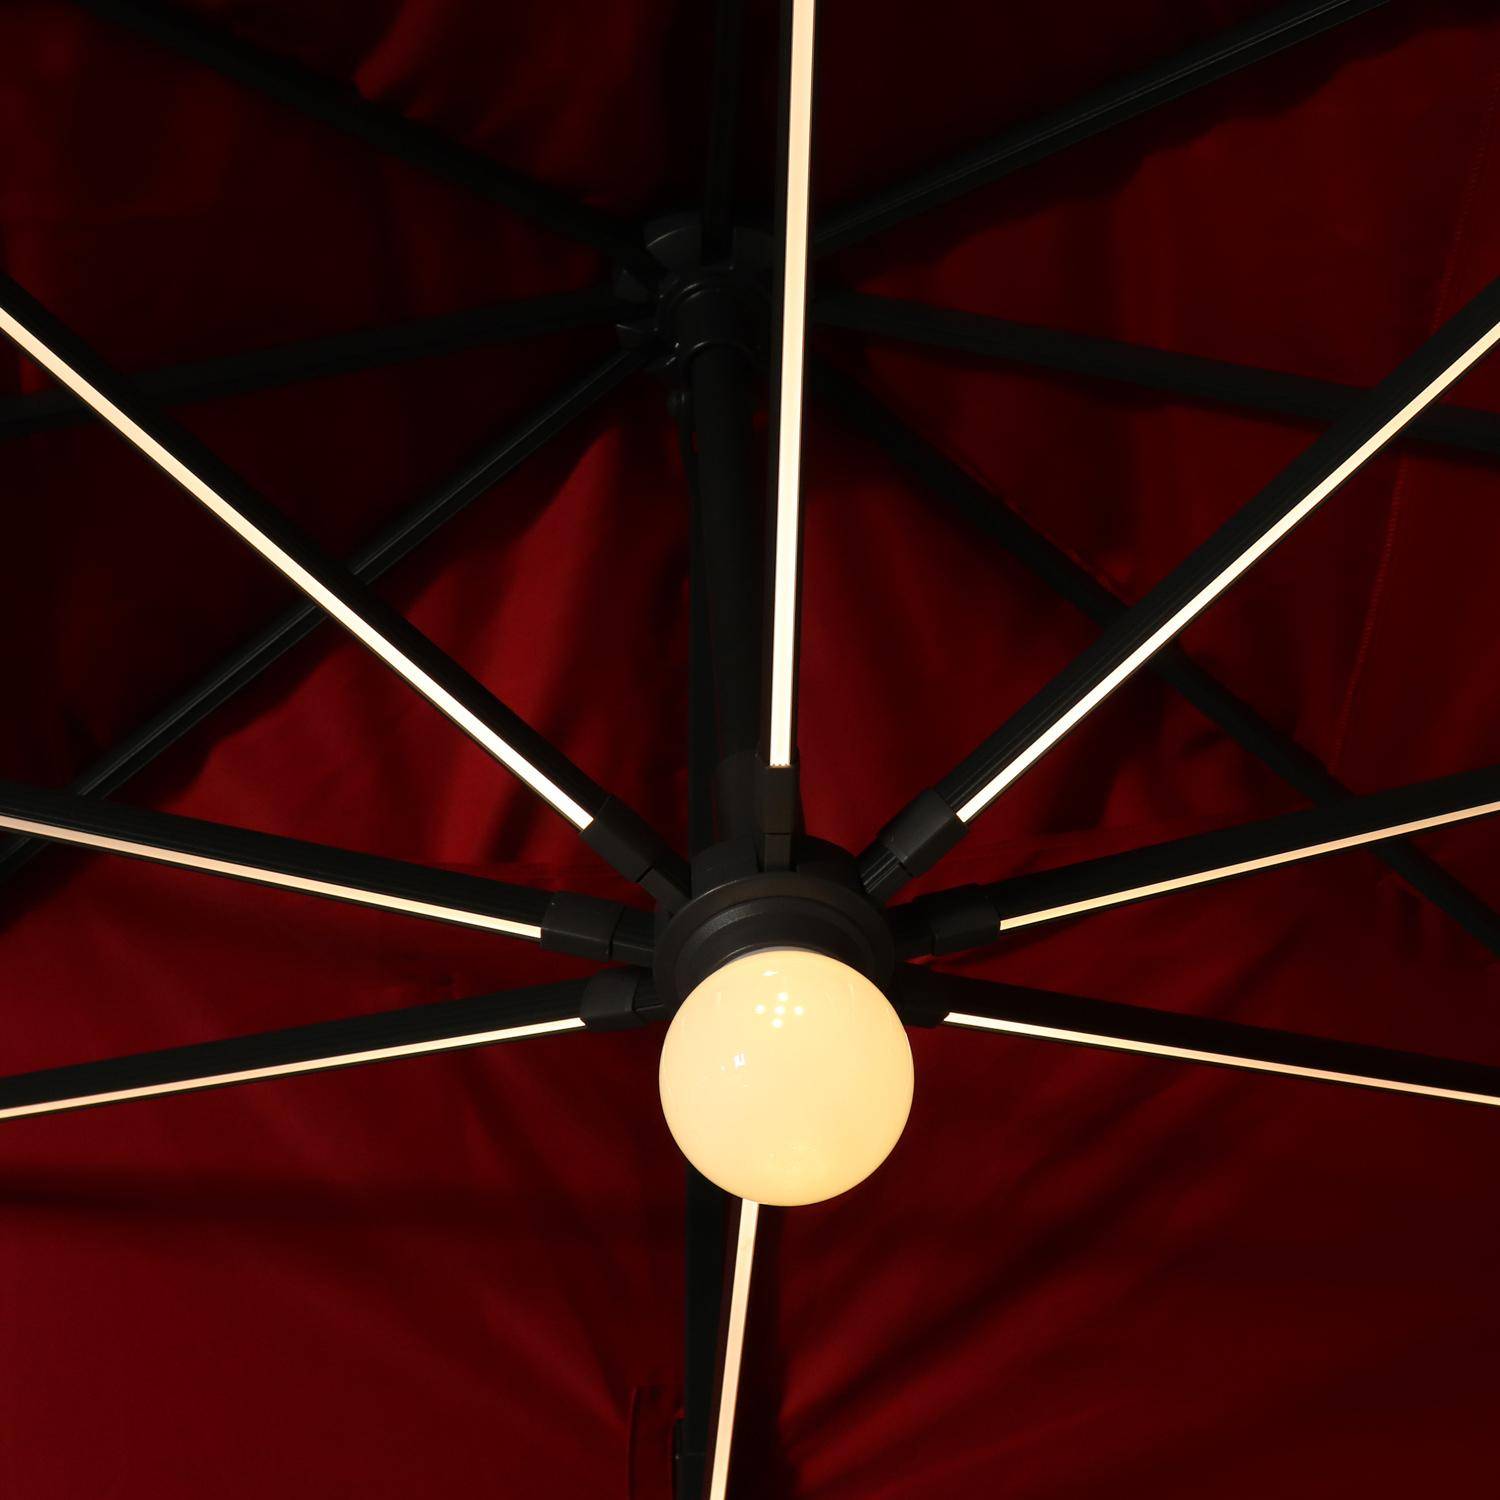 Chapéu-de-sol, guarda-sol, excêntrico, retangular, LED, antracite e vermelho, 3x4 cm, base giratória - Luce Photo3